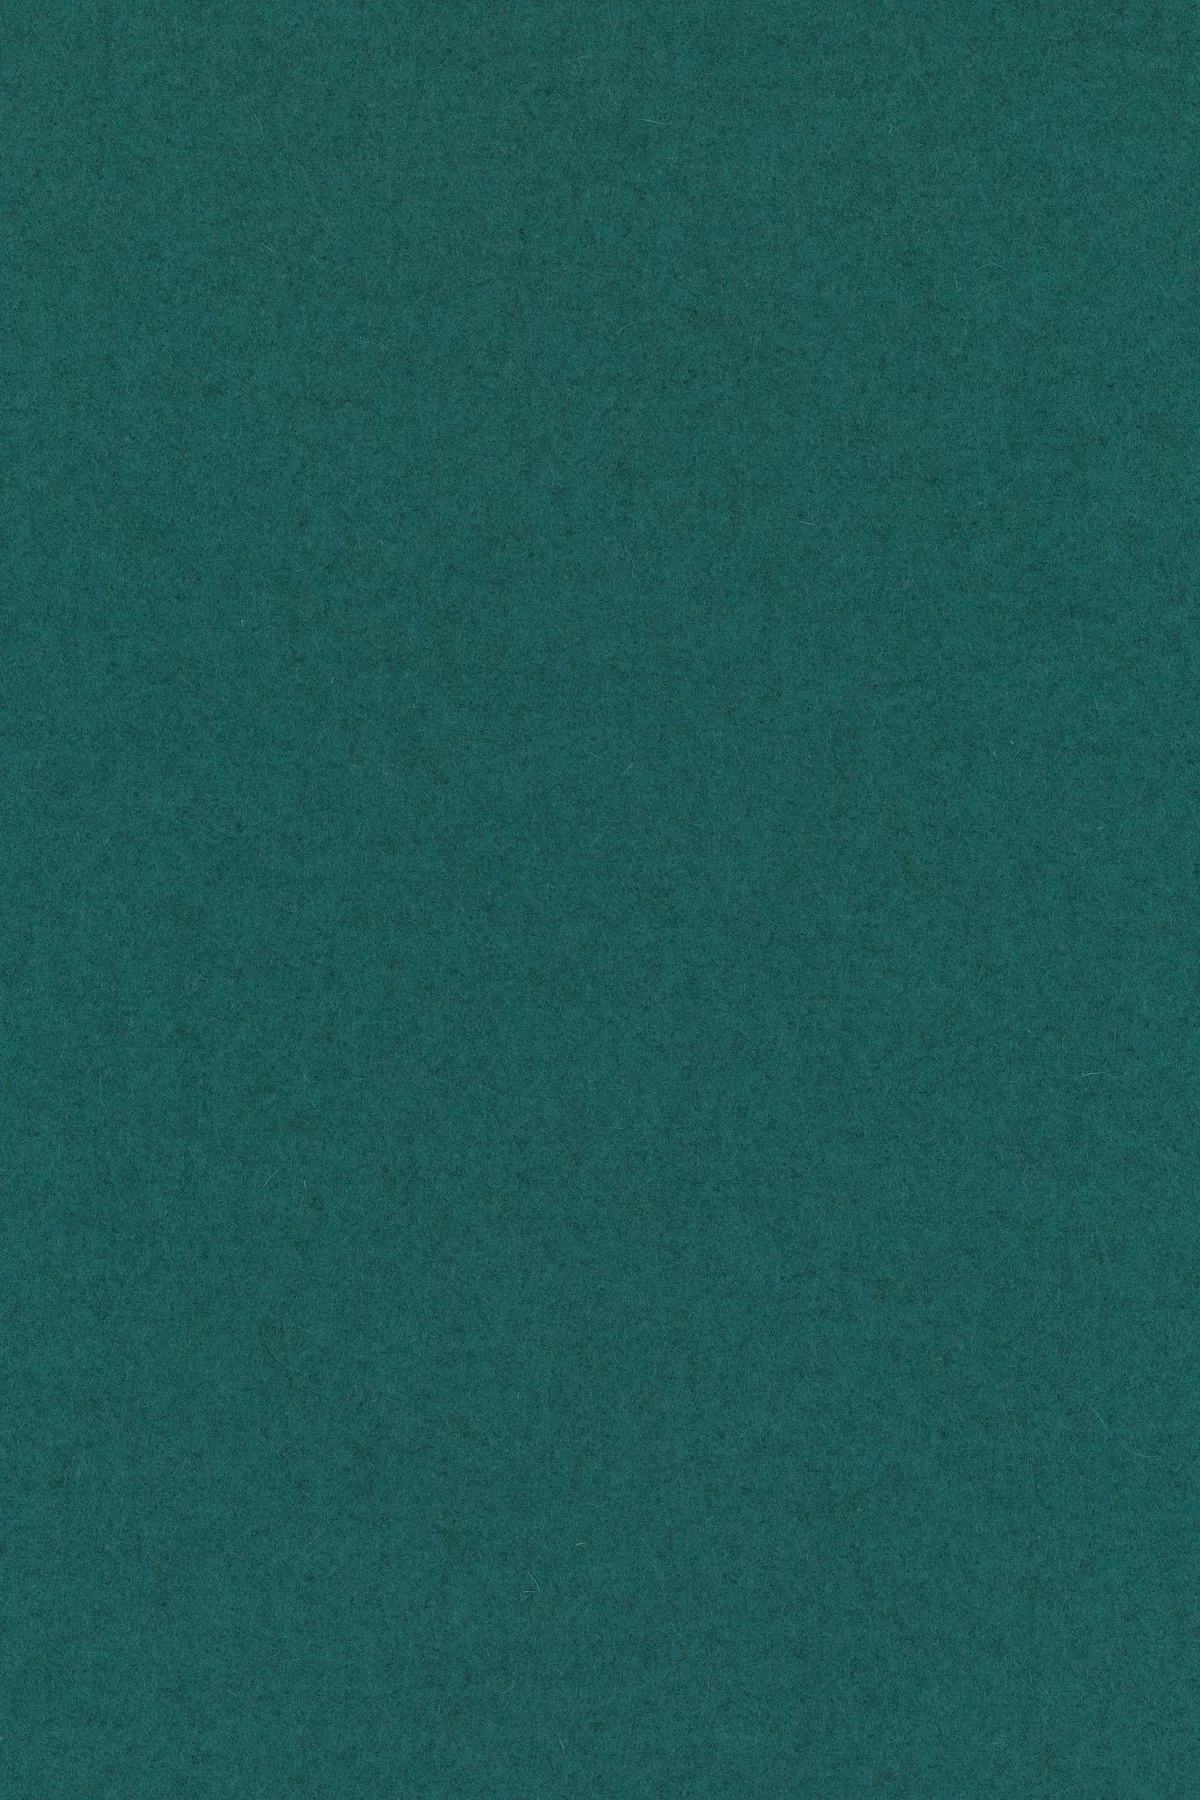 Fabric sample Divina Melange 3 821 green